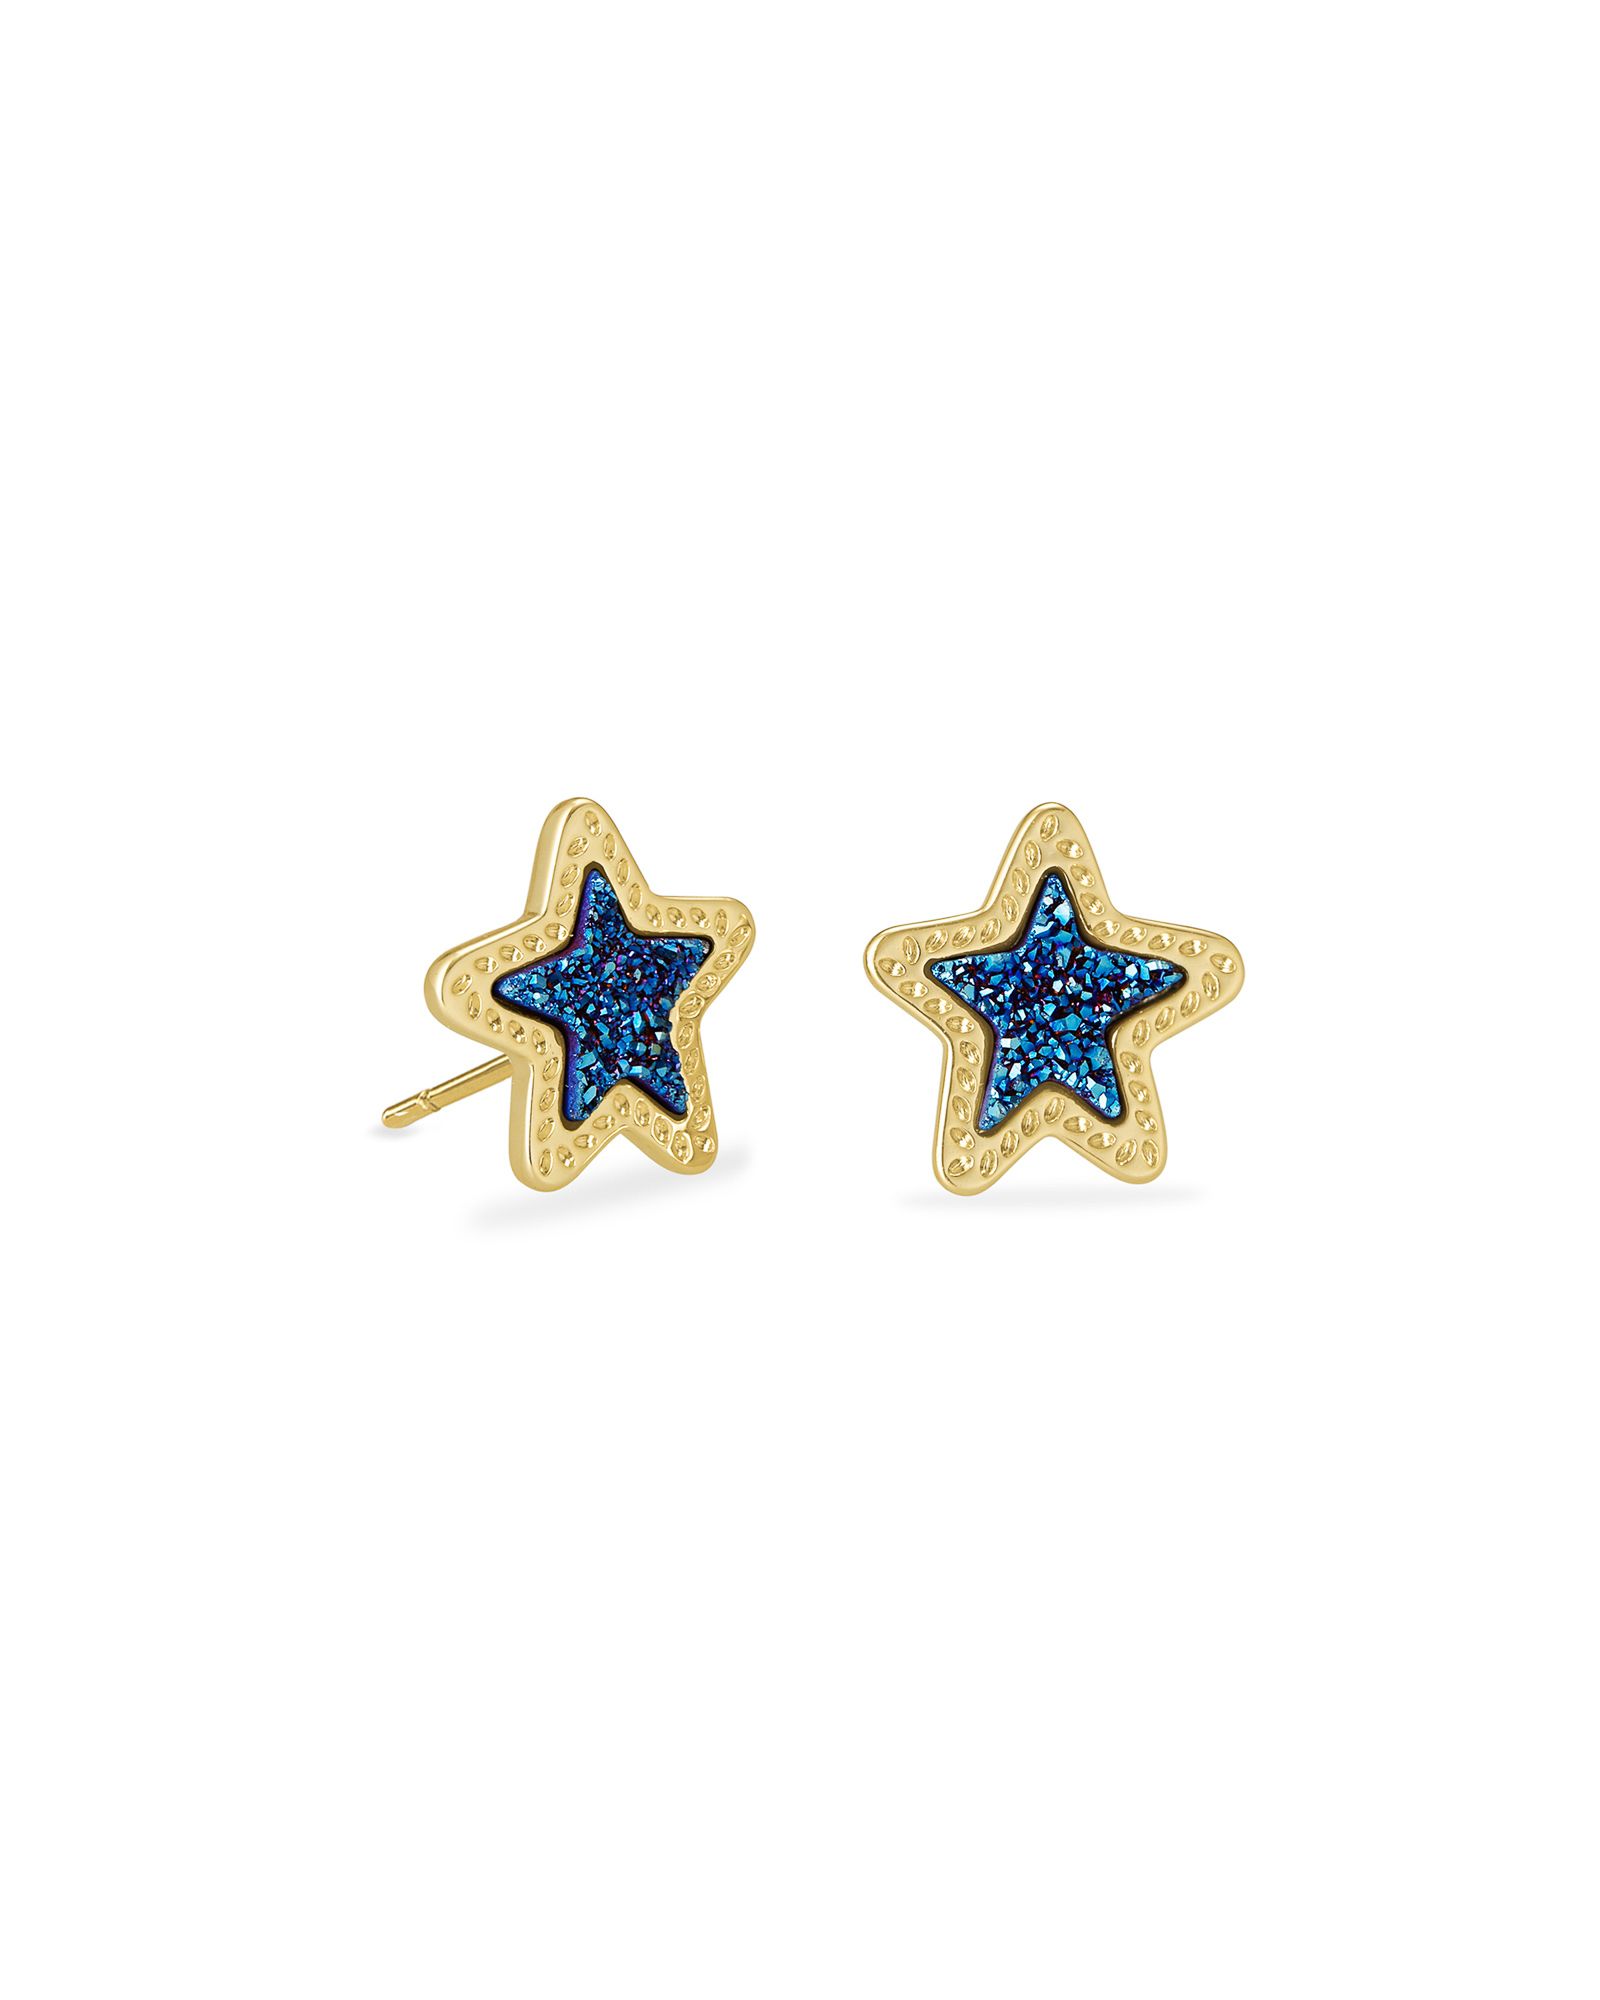 Jae Star Gold Stud Earrings in Blue Drusy | Kendra Scott | Kendra Scott